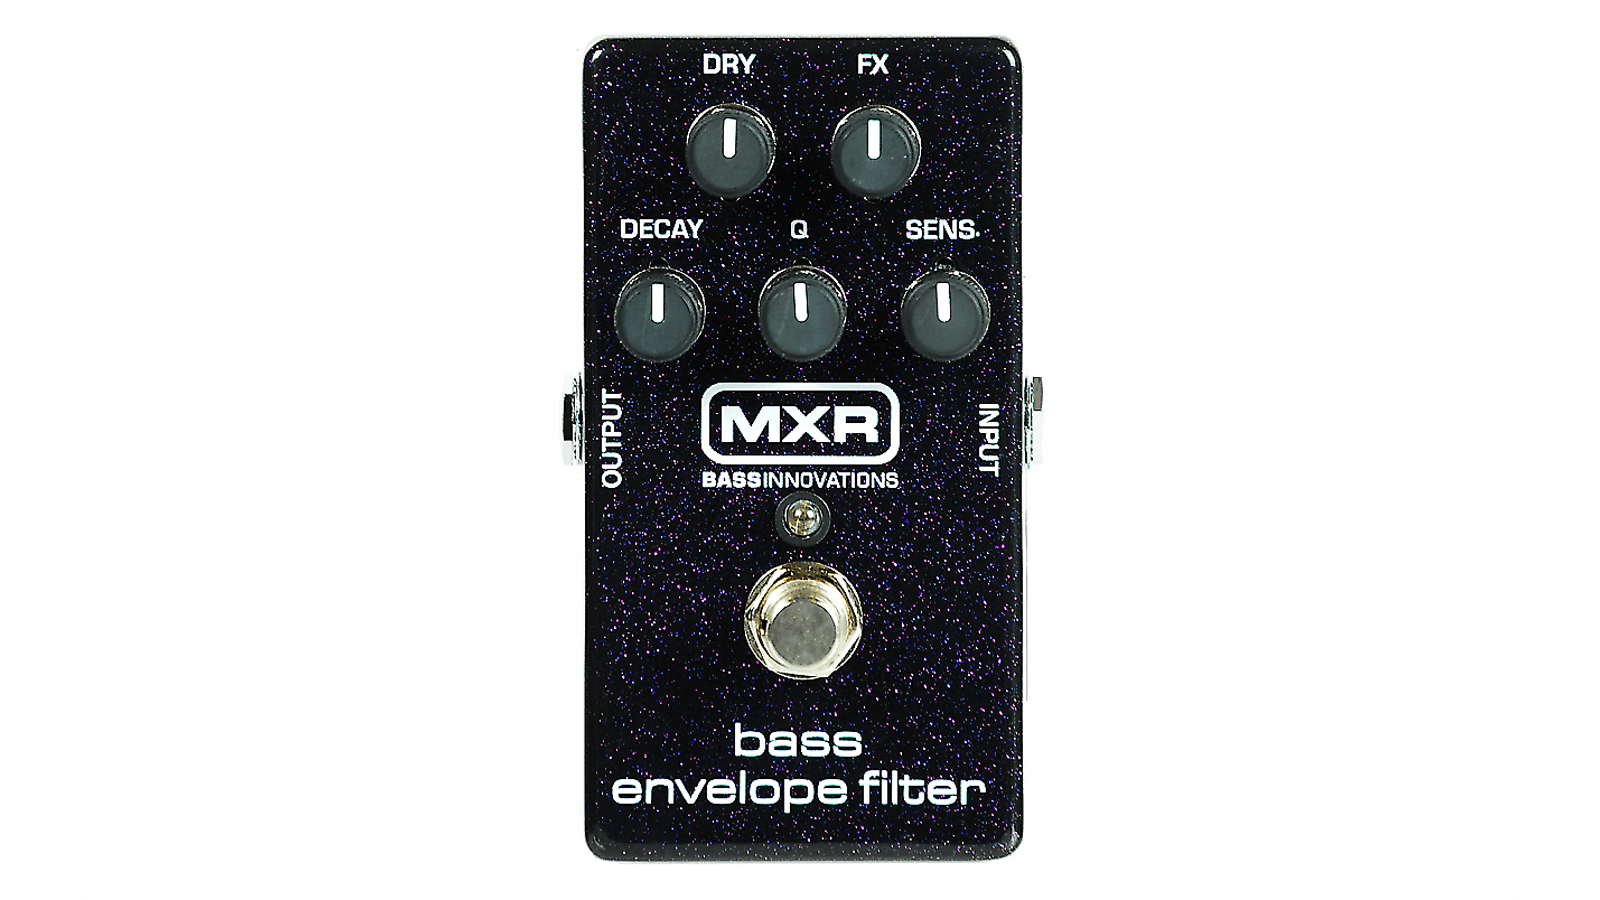 Best gifts for bass players: MXR M82 Bass Envelope Filter bass pedal